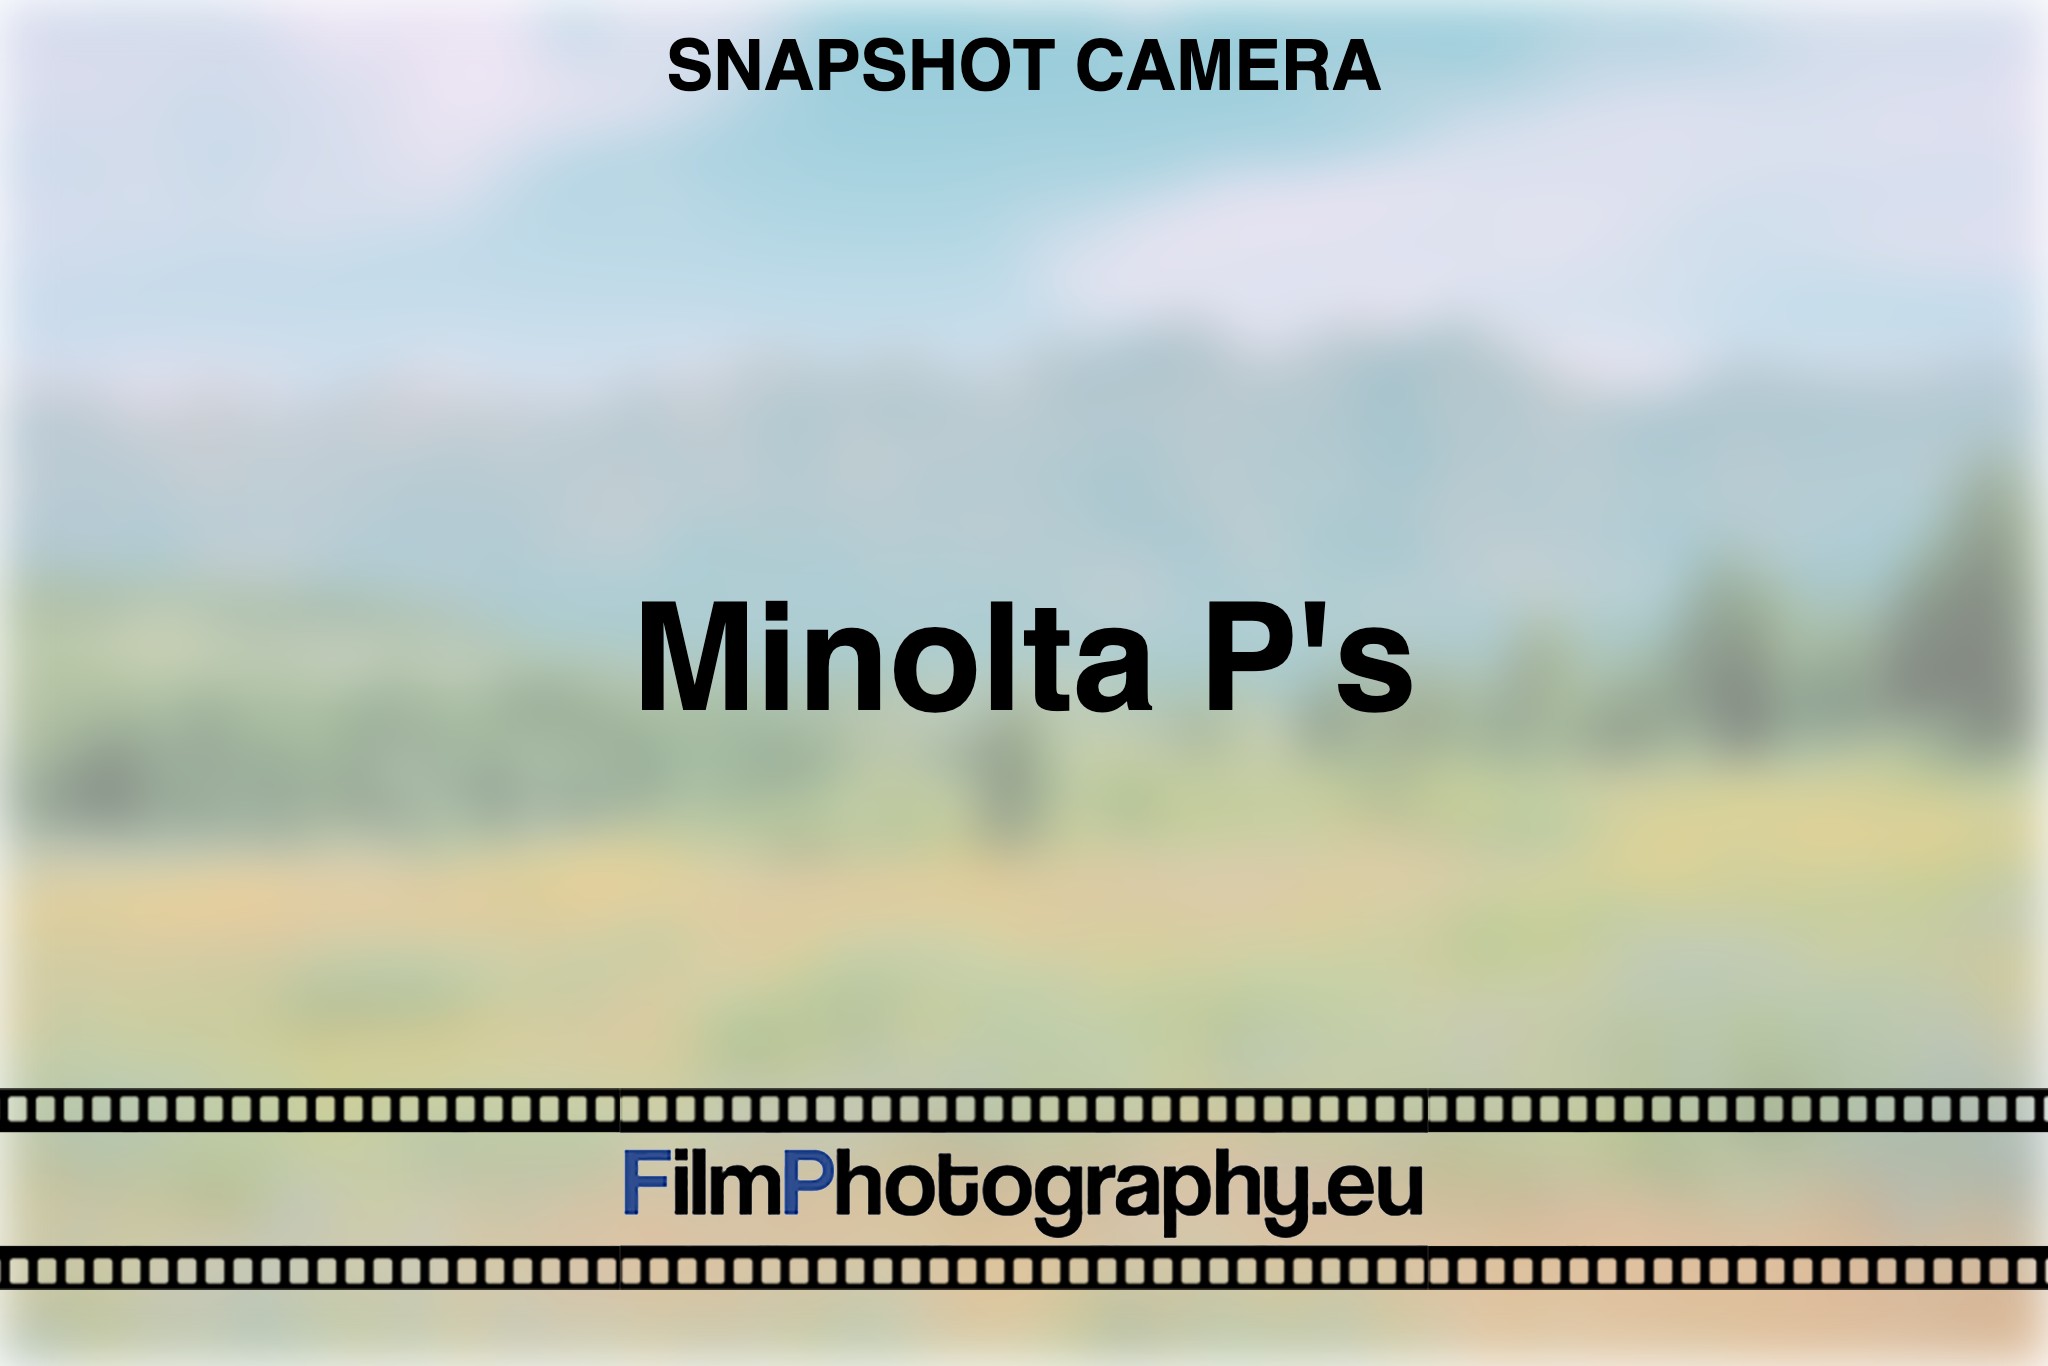 minolta-p's-snapshot-camera-bnv